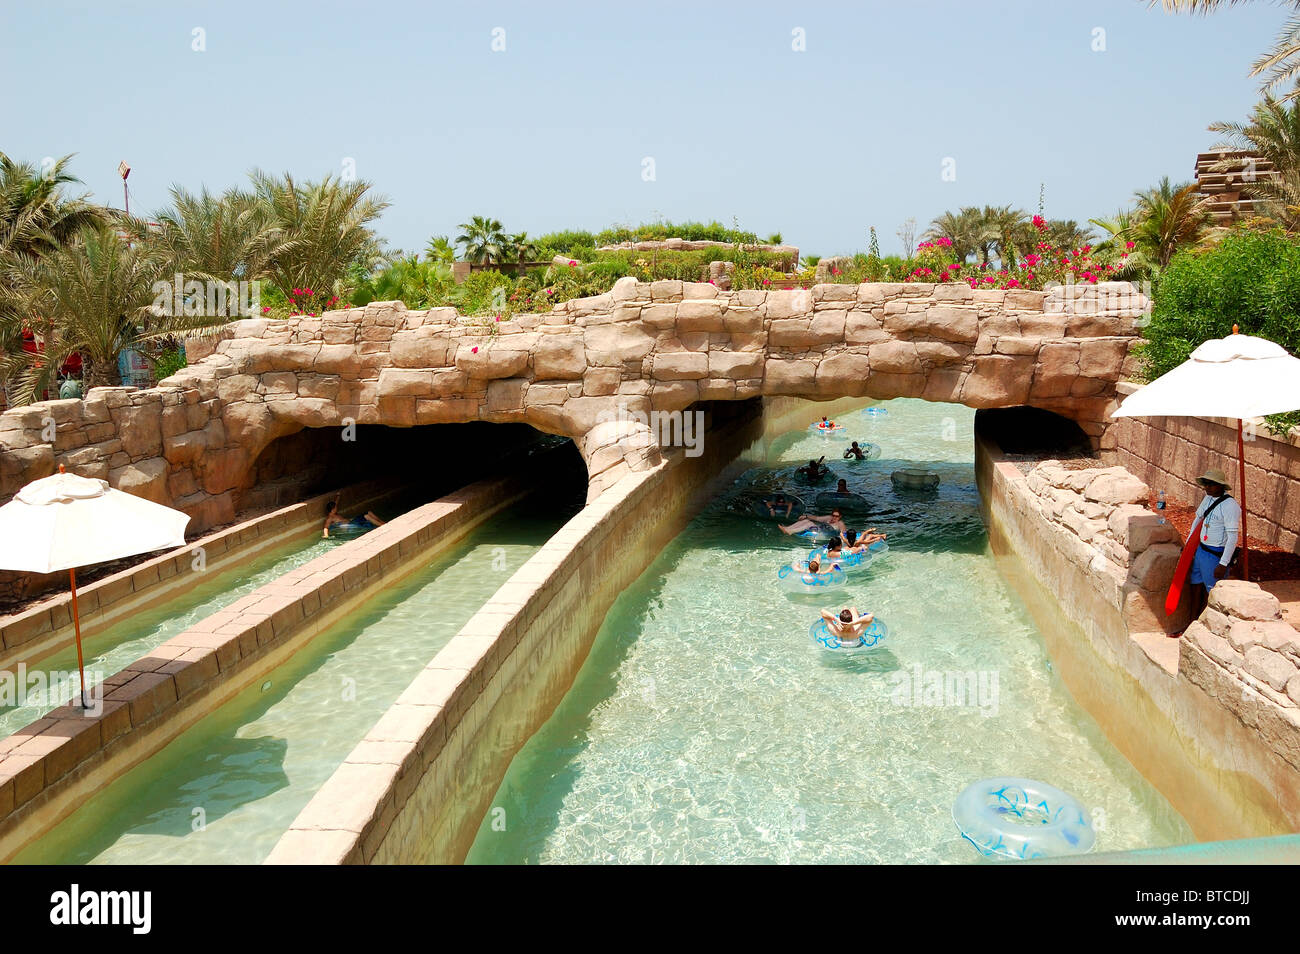 Waterpark of Atlantis the Palm hotel, Dubai, UAE Stock Photo